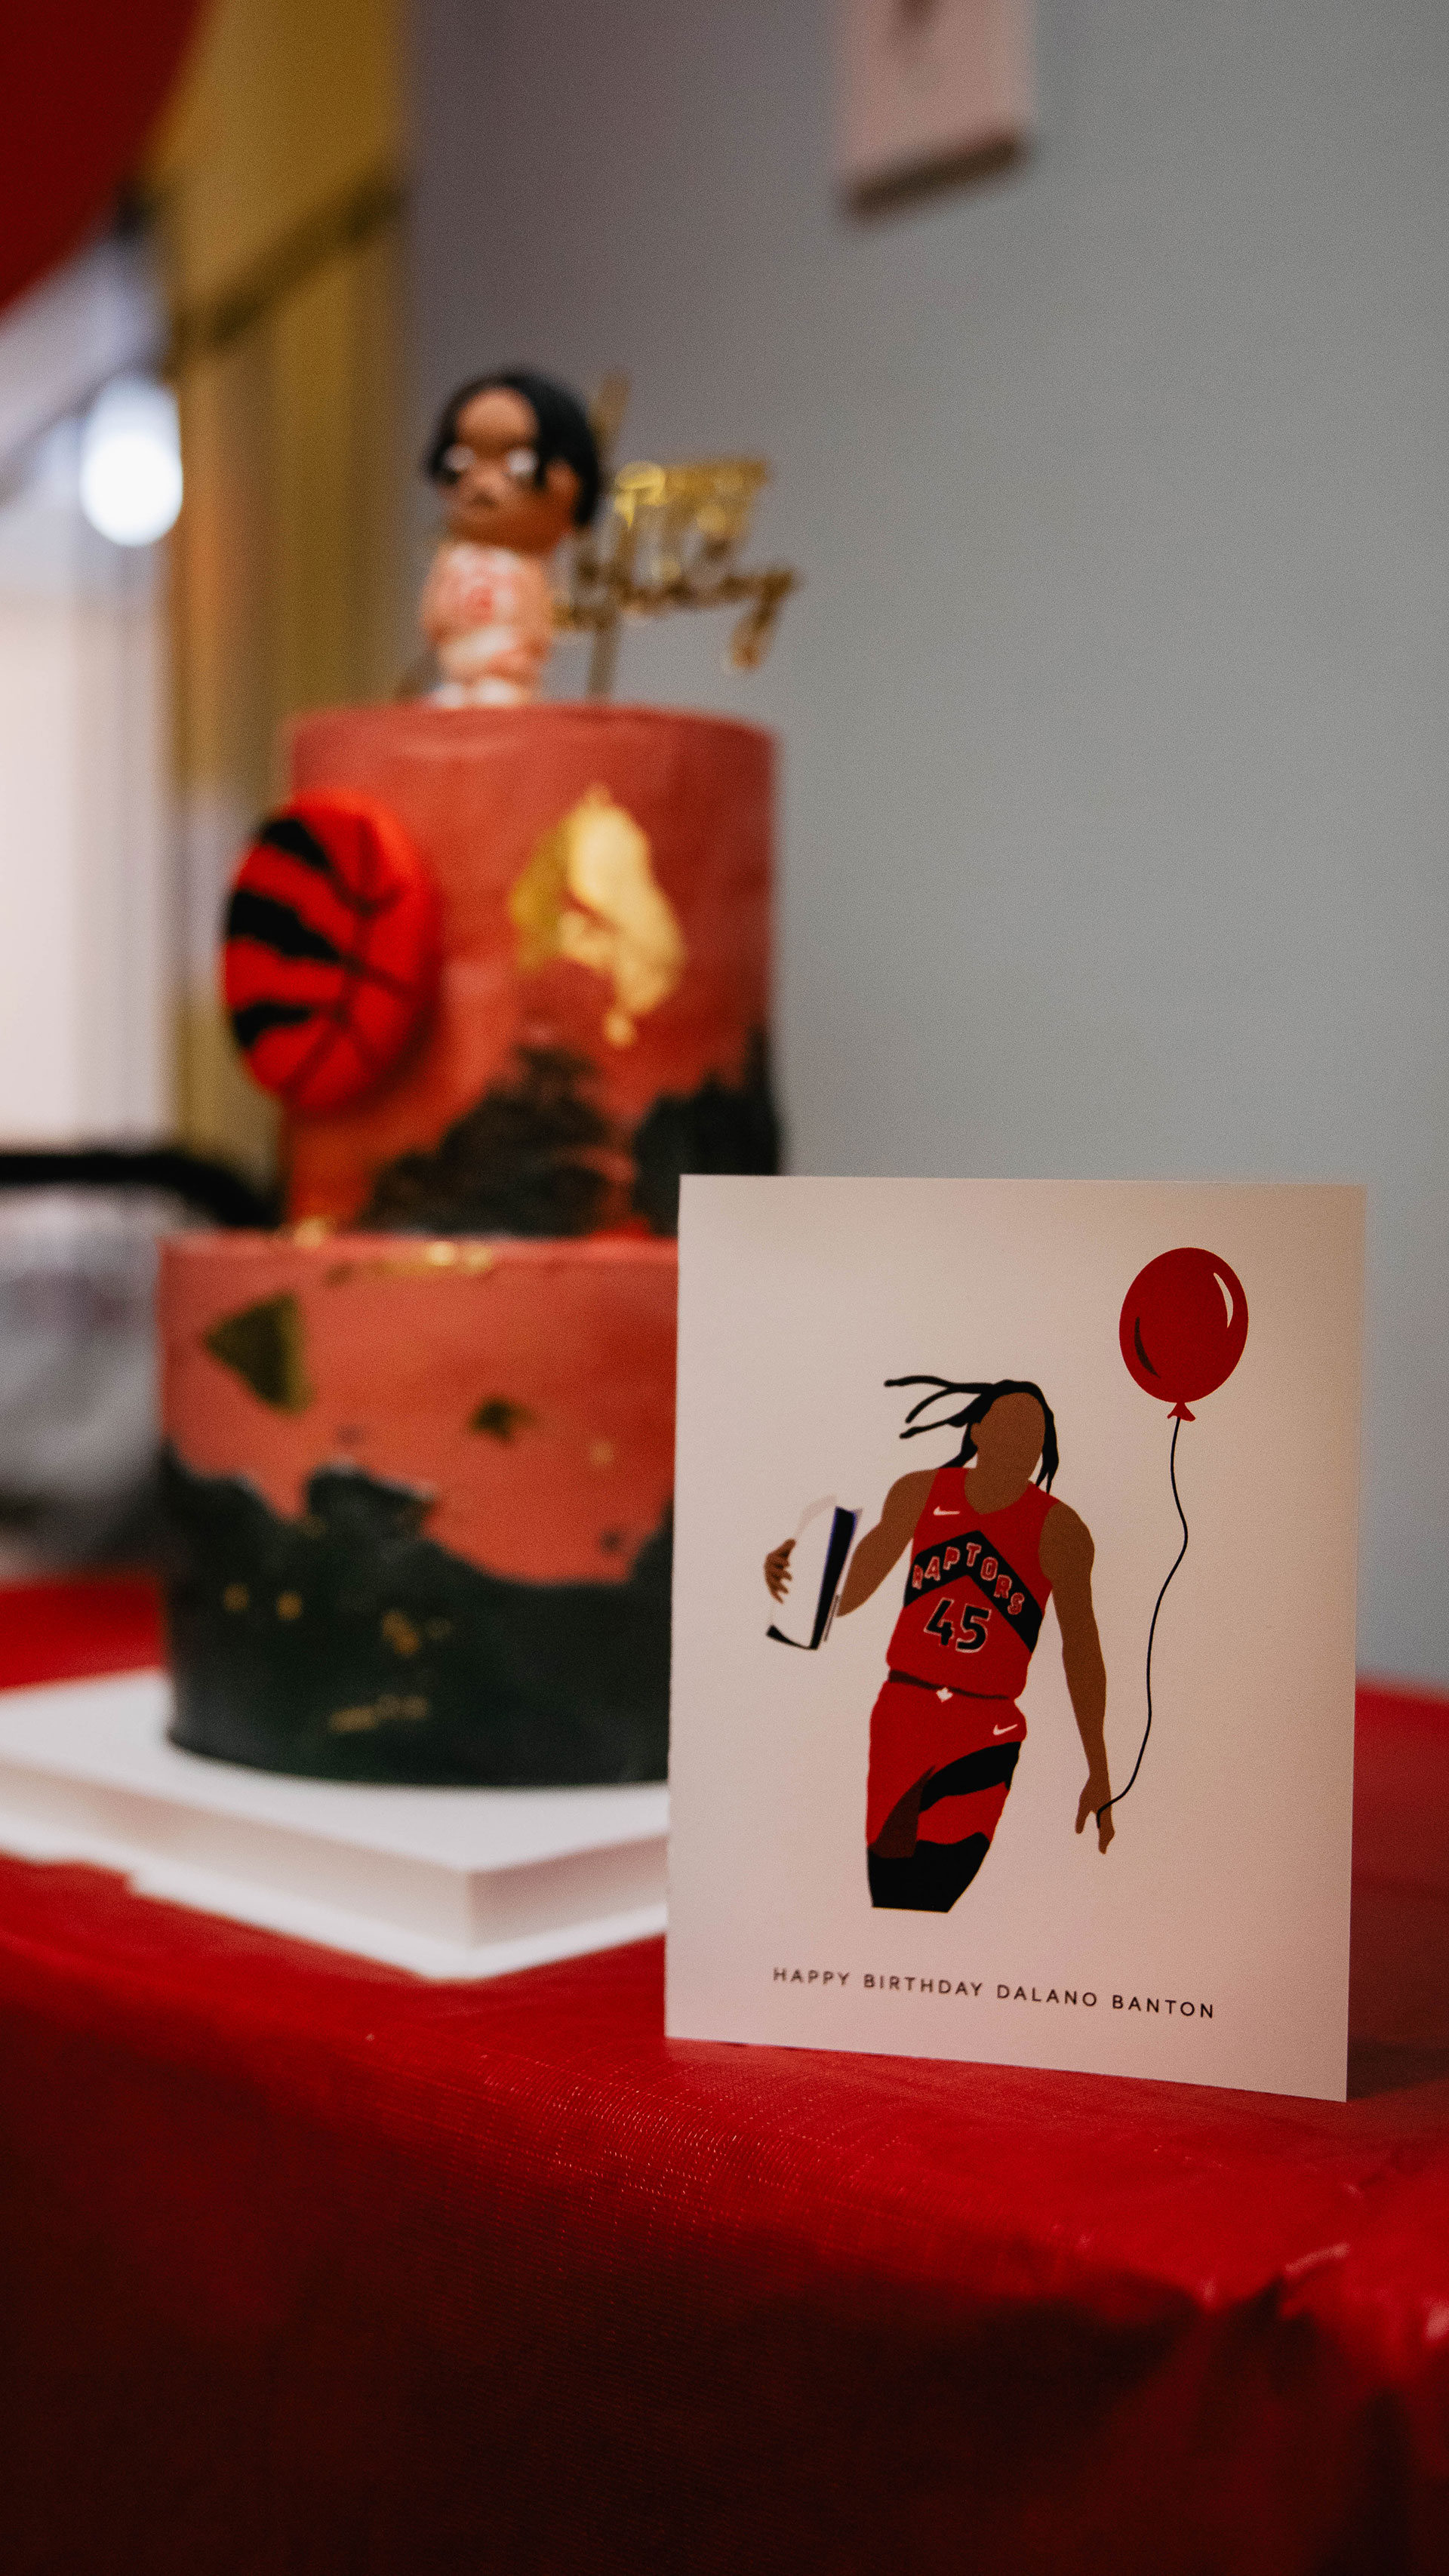 dalano-banton-birthday-card